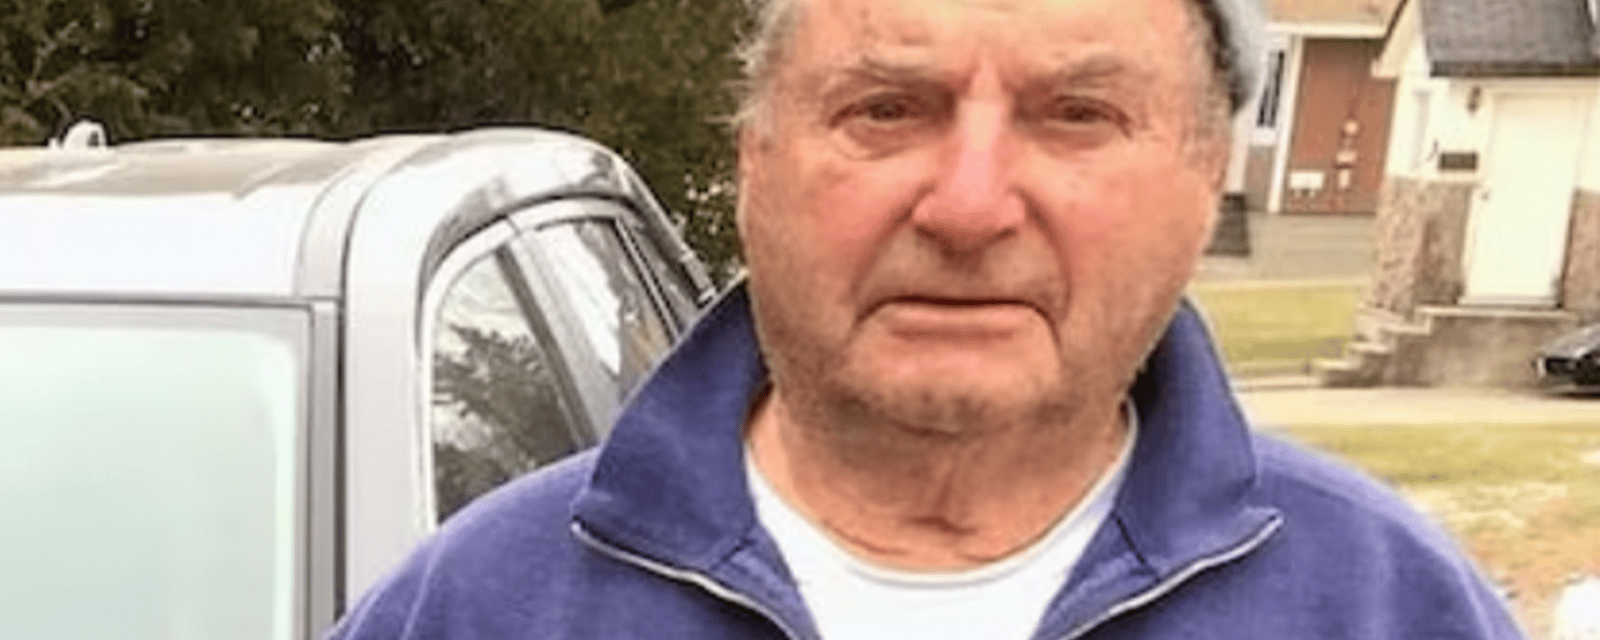 Grande déception pour un homme de 84 ans qui voulait s'acheter une voiture